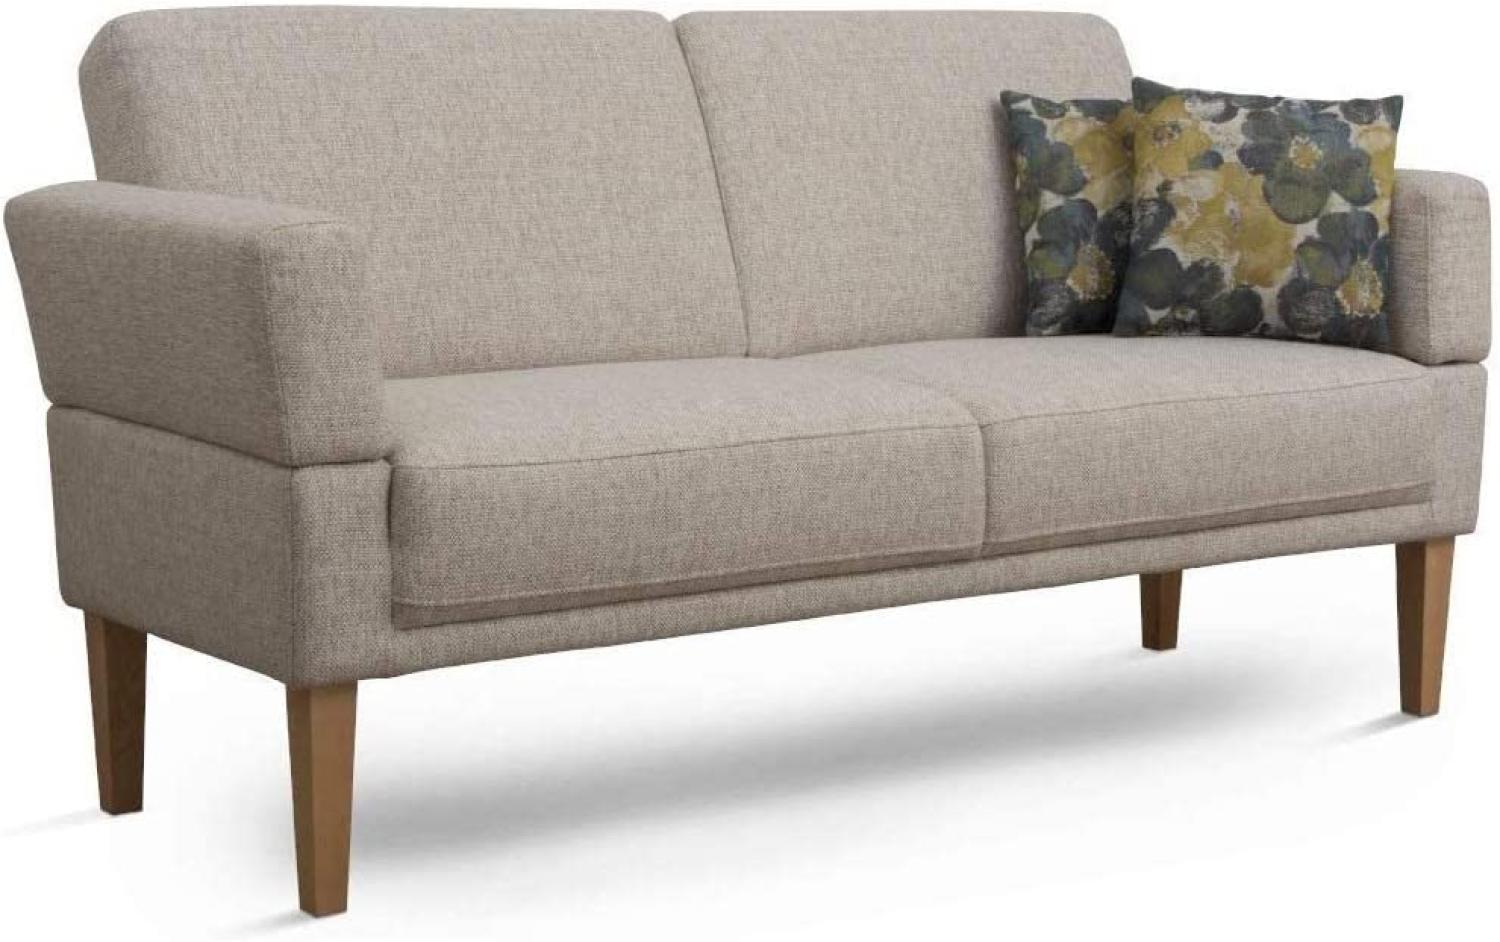 Cavadore 3-Sitzer Sofa Femarn mit Federkern / Küchensofa für Esszimmer oder Küche / 190 x 98 x 81 / Strukturstoff Natur (Beige/Weiß) Bild 1